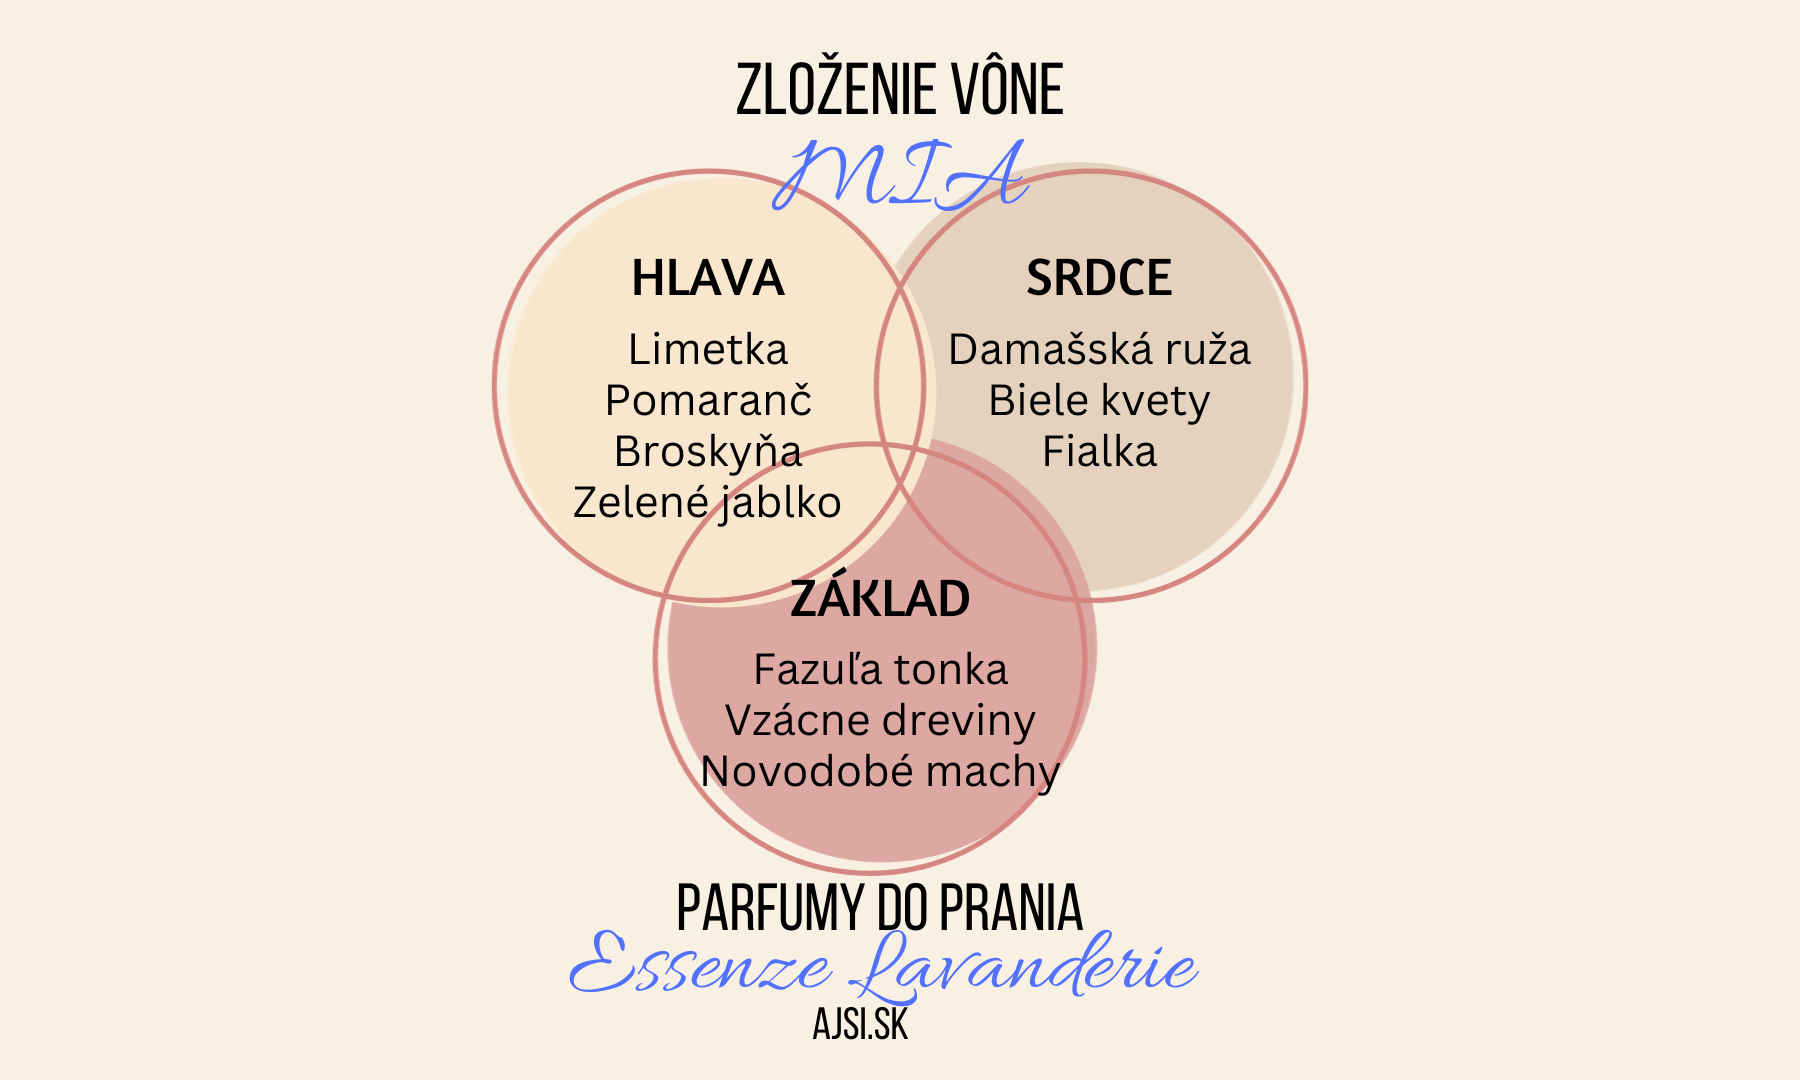 MIA zloženie vône Essenze Lavanderie ajsi.sk